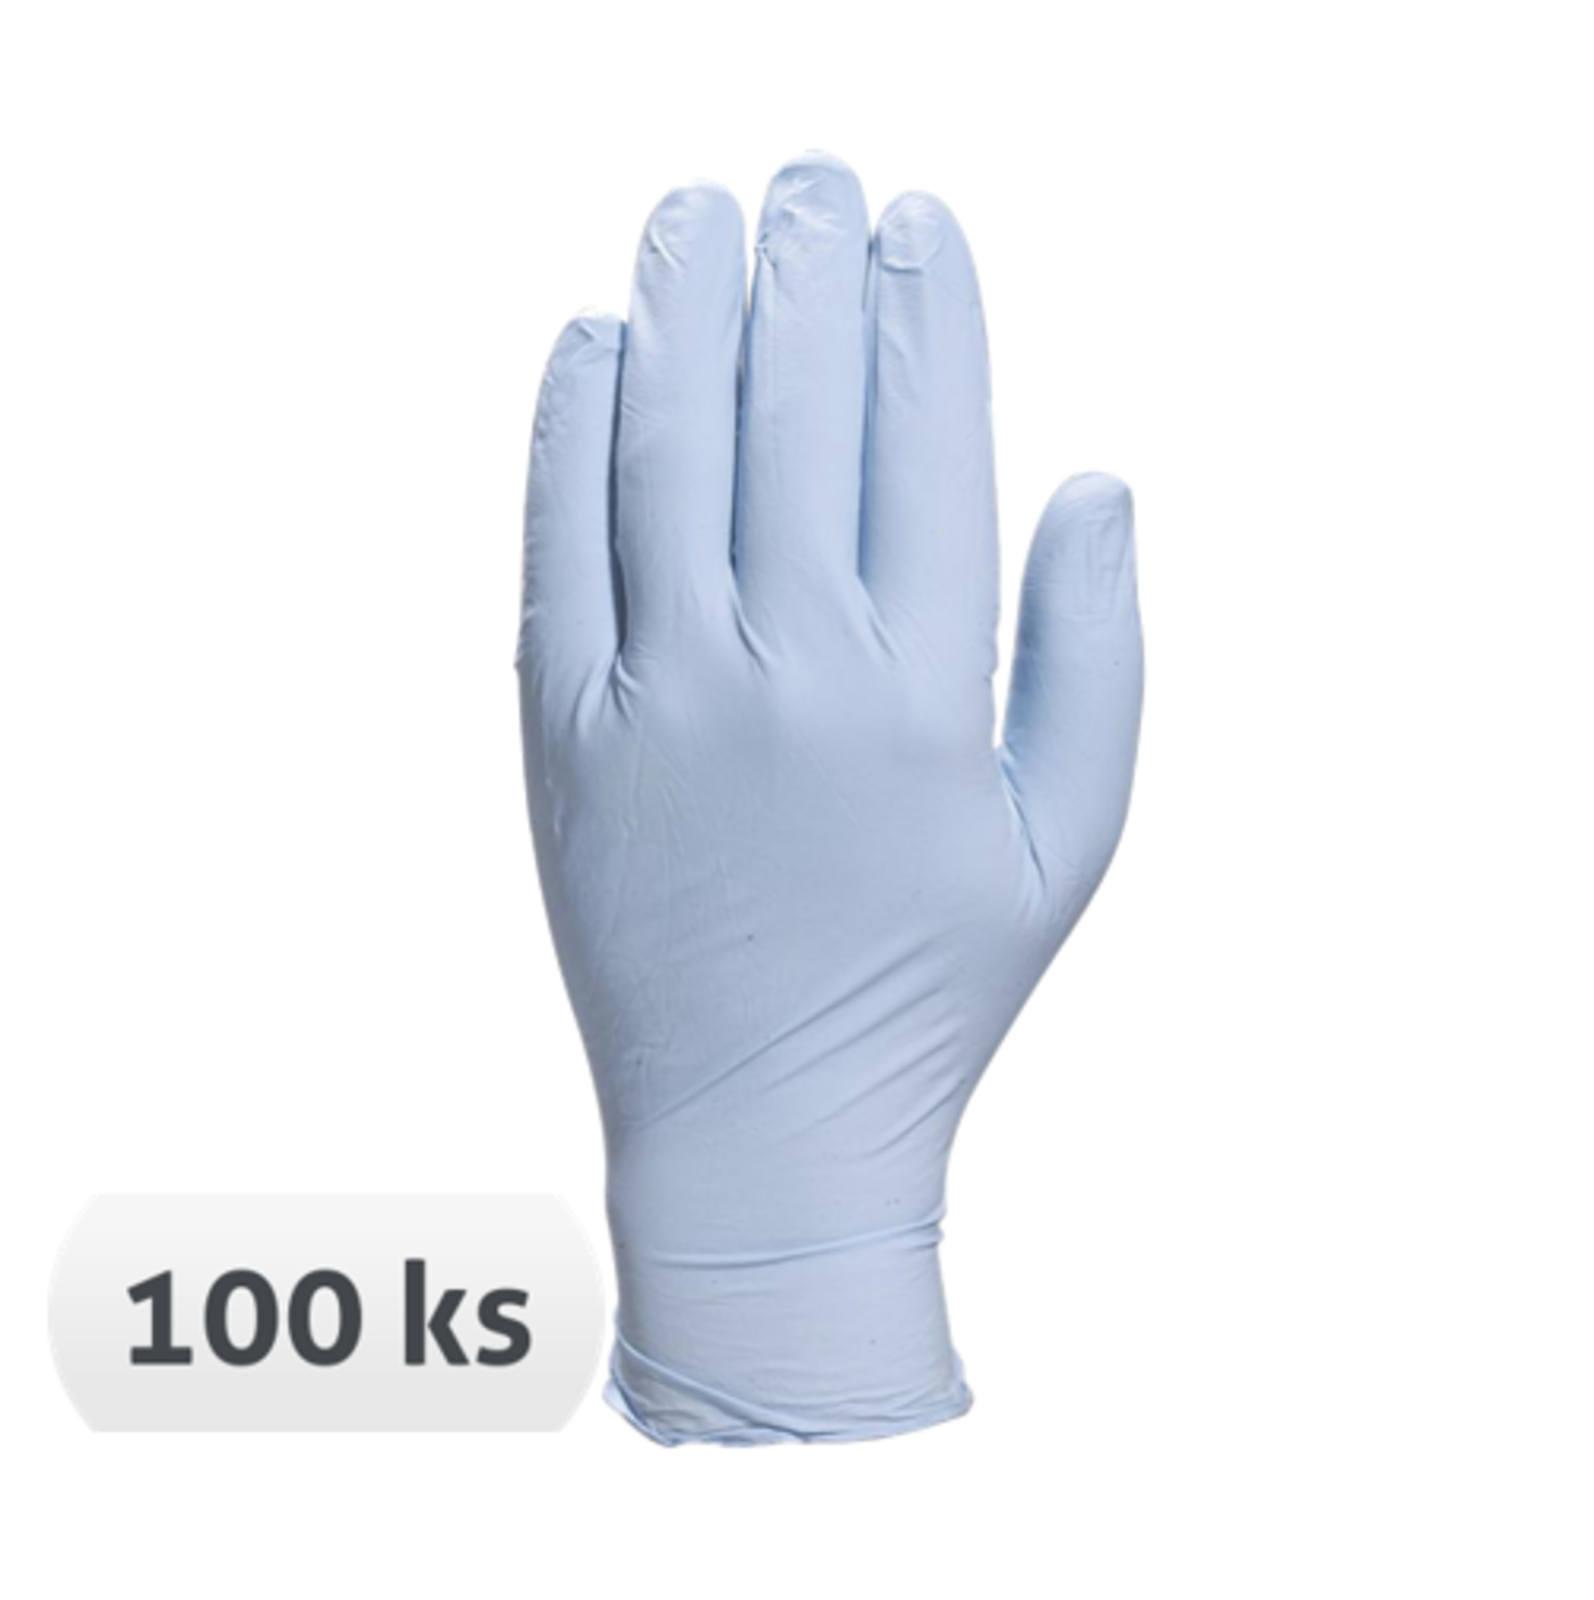 Jednorazové nitrilové rukavice Venitactyl V1400B100 nepúdrované 100 ks - veľkosť: 7/8, farba: modrá